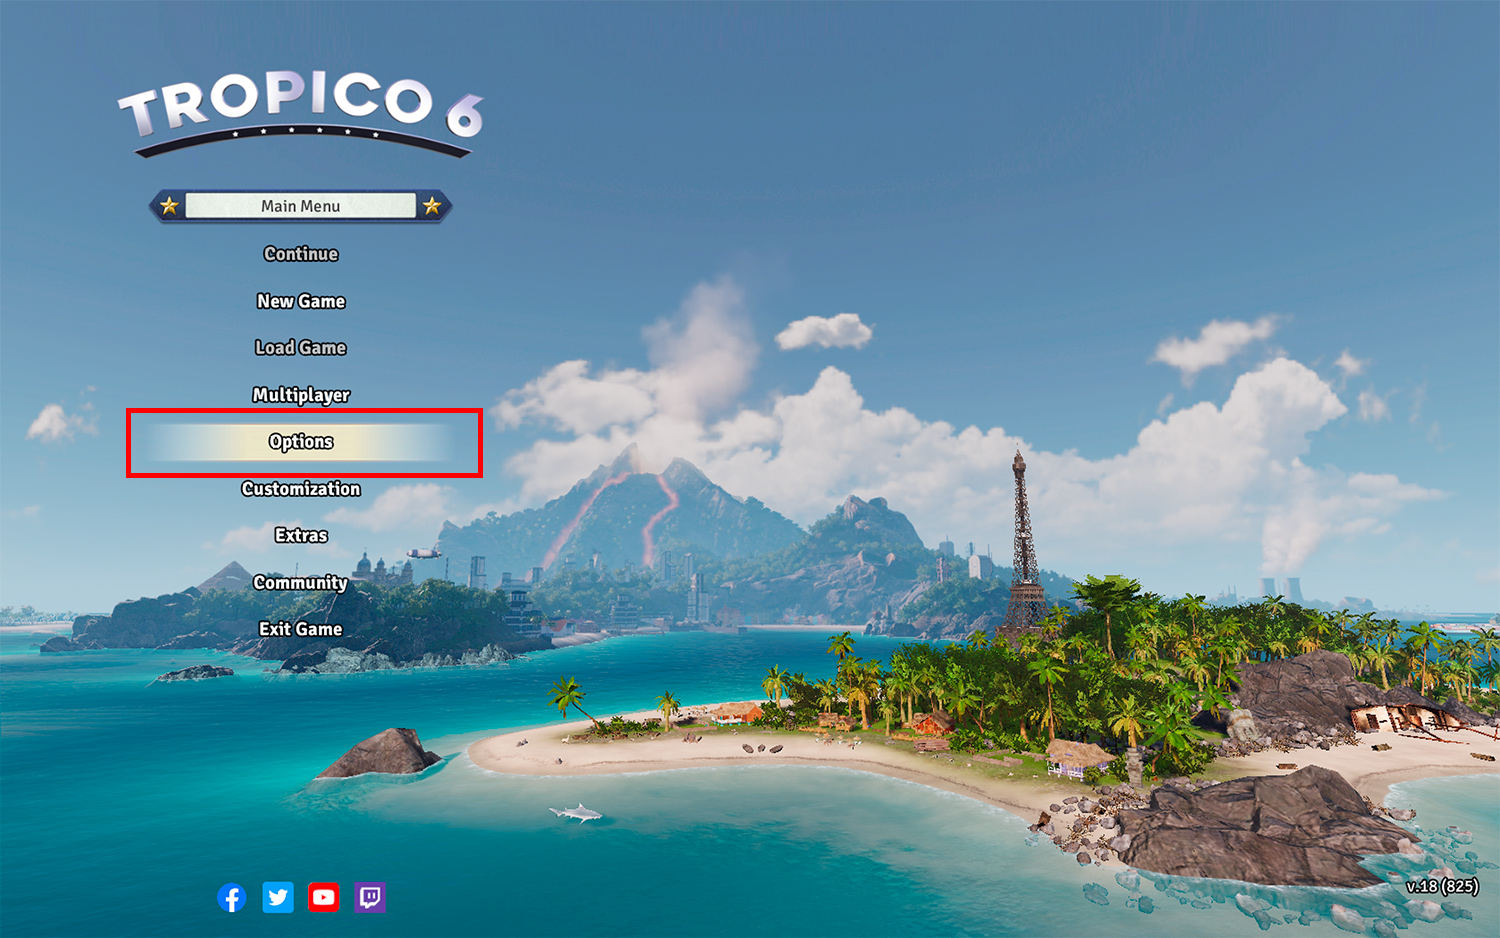 海岛大亨6 Tropico 6 For Mac v18.825 模拟经营游戏中文版